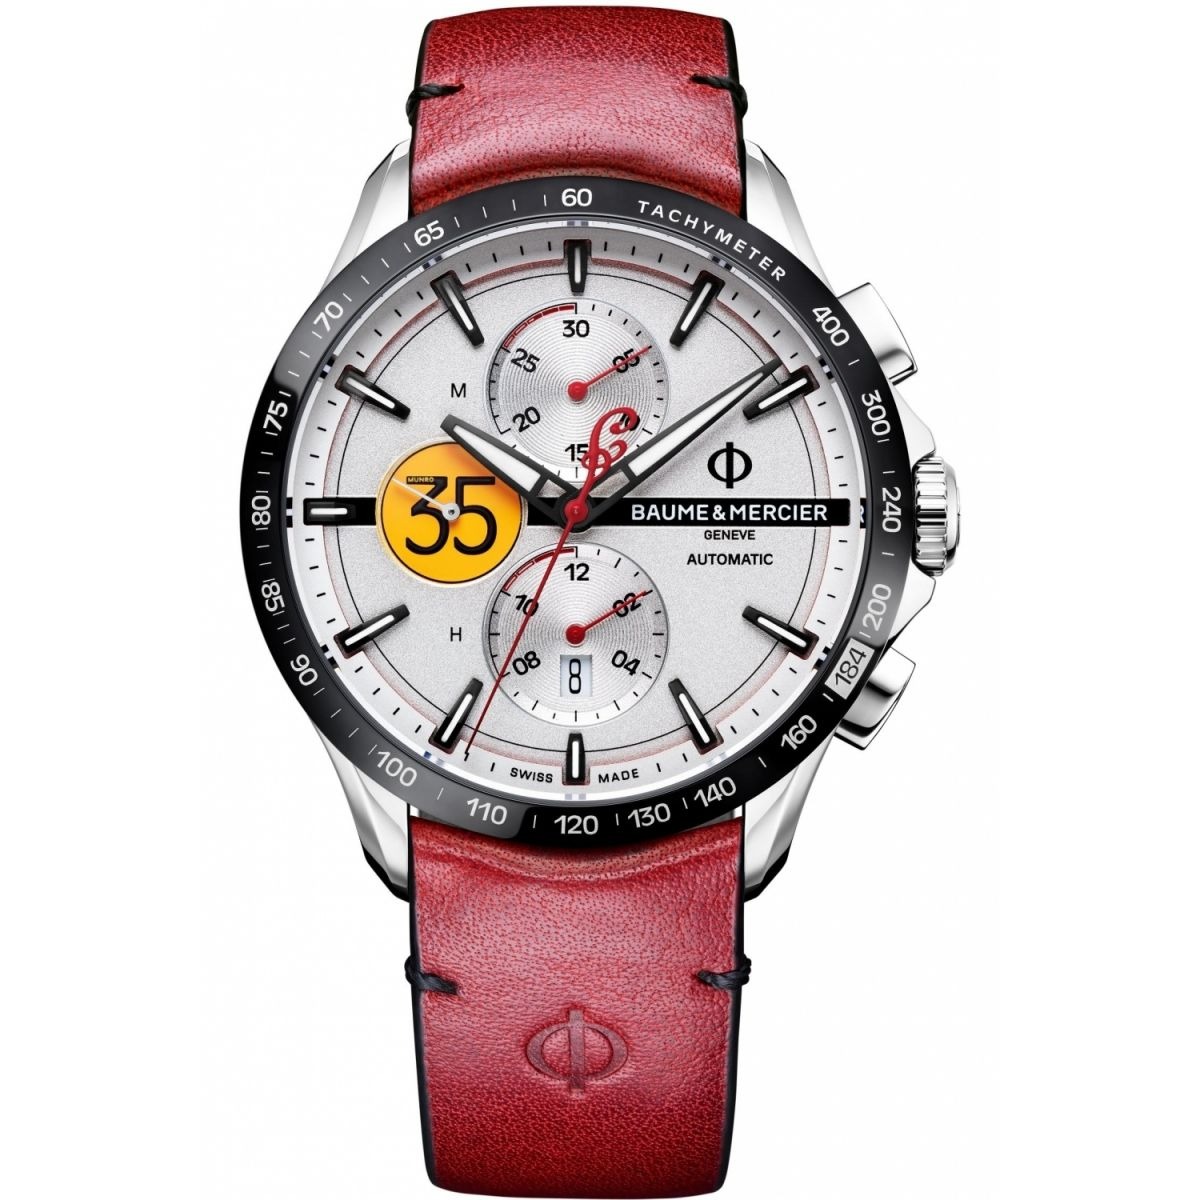 Gent White Chronograph Watch Baume & Mercier - Watch Shop GOOFASH